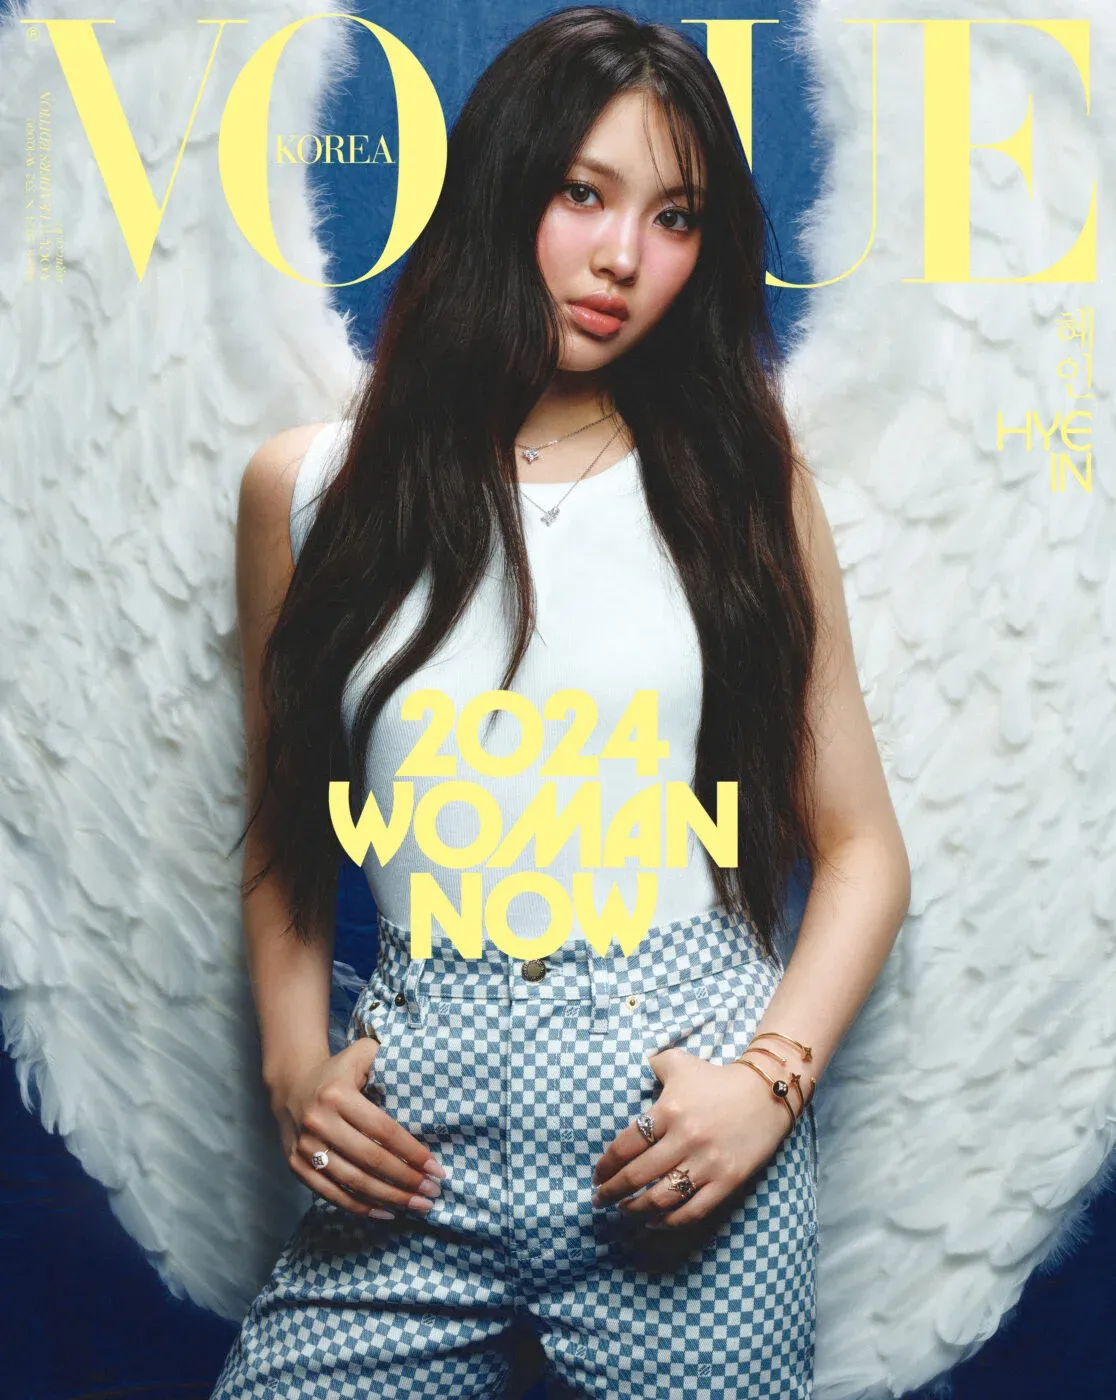 Vogue Corea elige a 24 mujeres que representan la generación contemporánea: aquí están todos los ídolos del K-Pop seleccionados